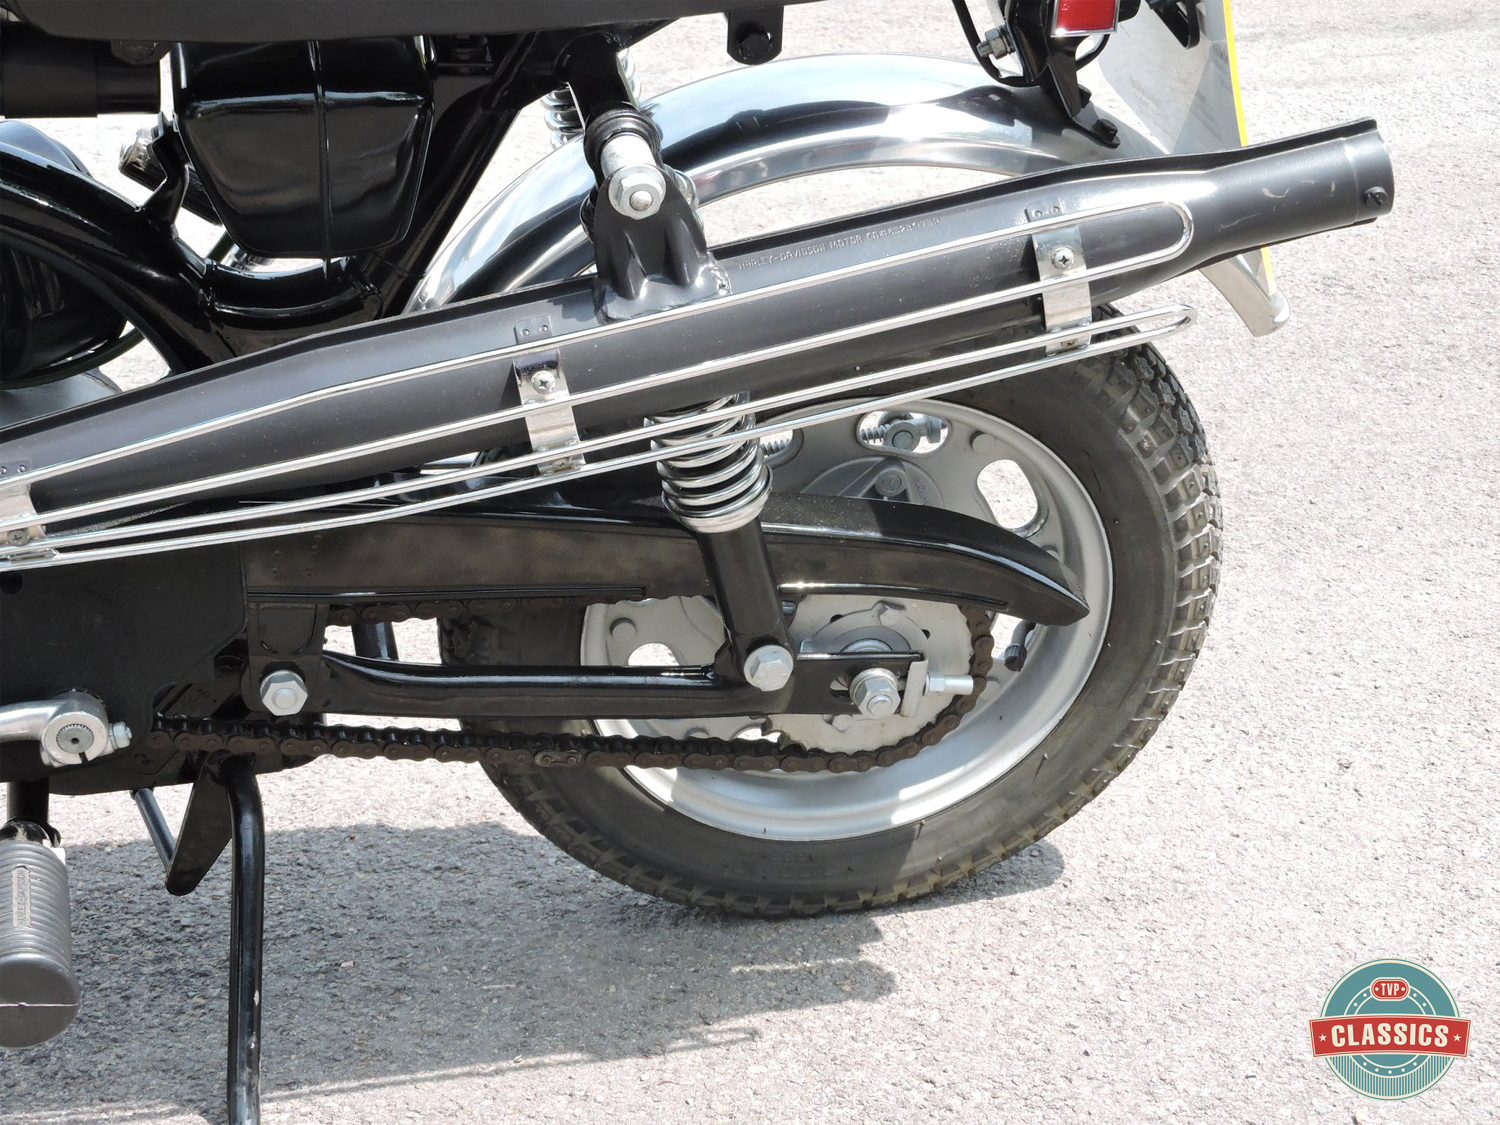 Le Harley Davidson X90 de TVP Classics - mini4temps.fr